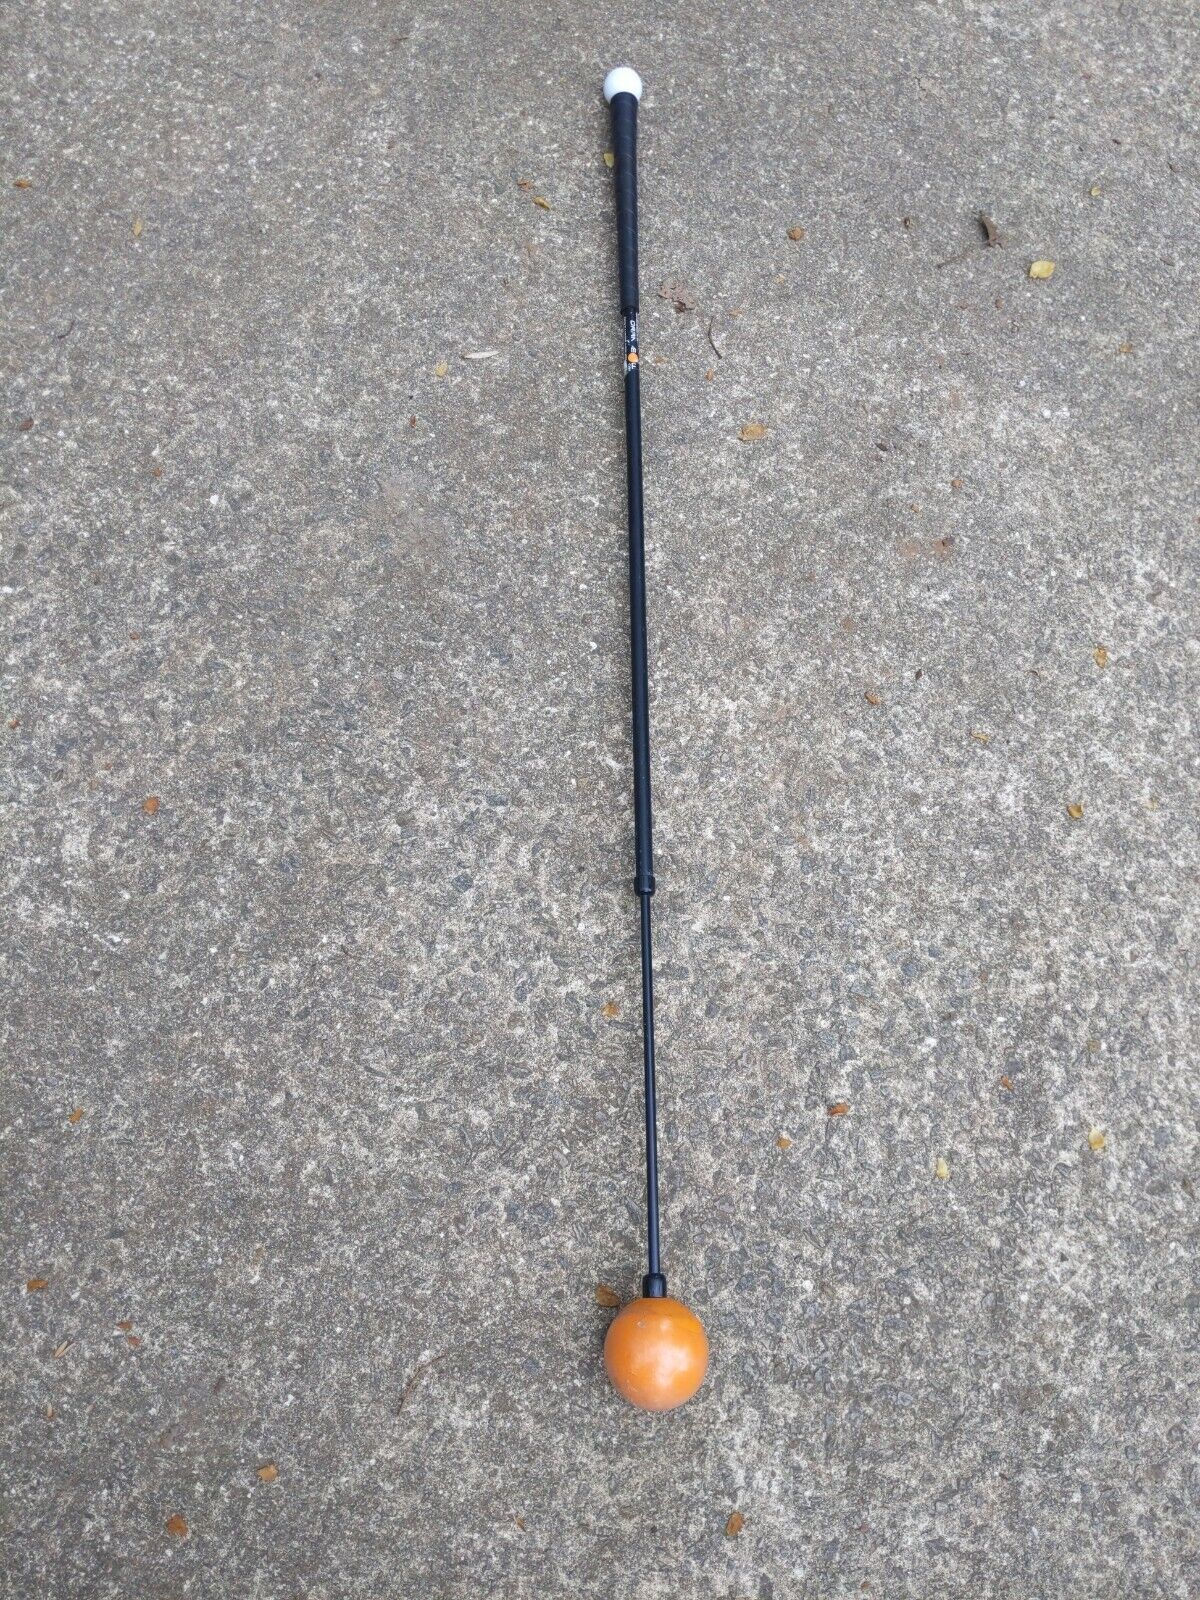 Orange Whip 47 inch Golf Swing Trainer